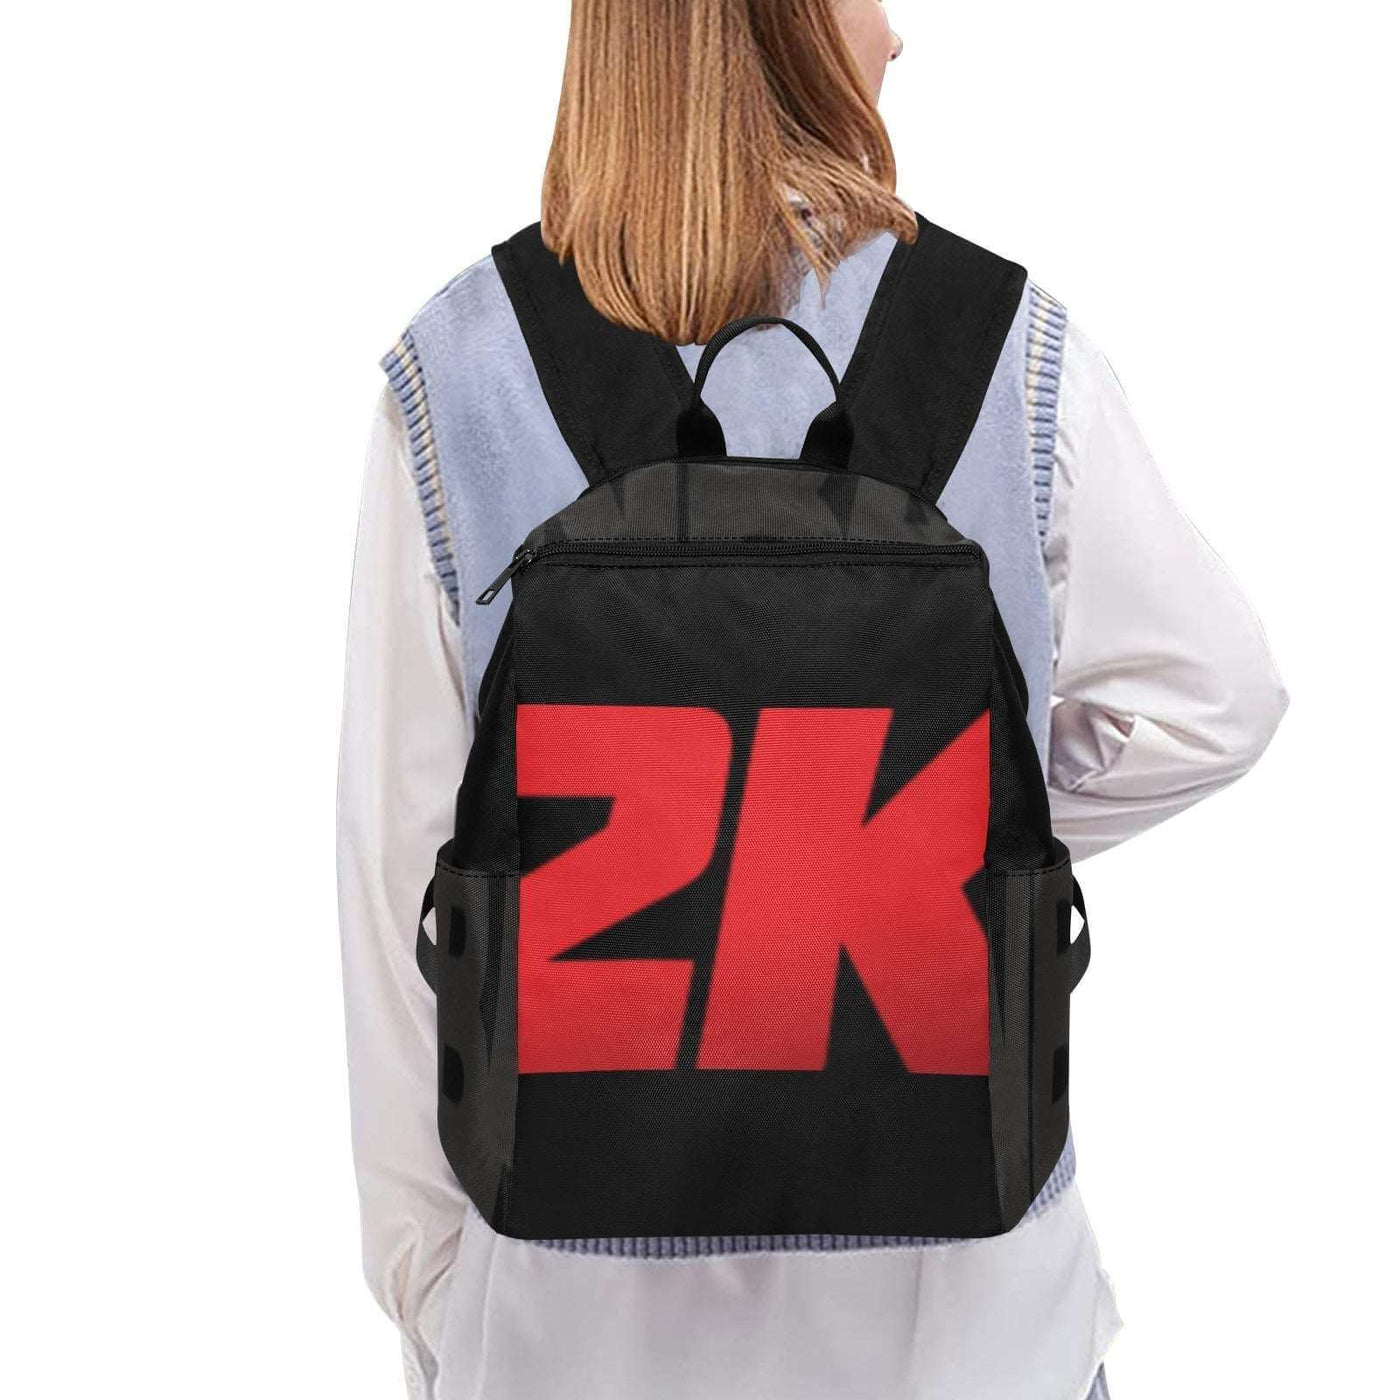 2K inspired Lightweight Casual Backpack (1730) Gapo Goods